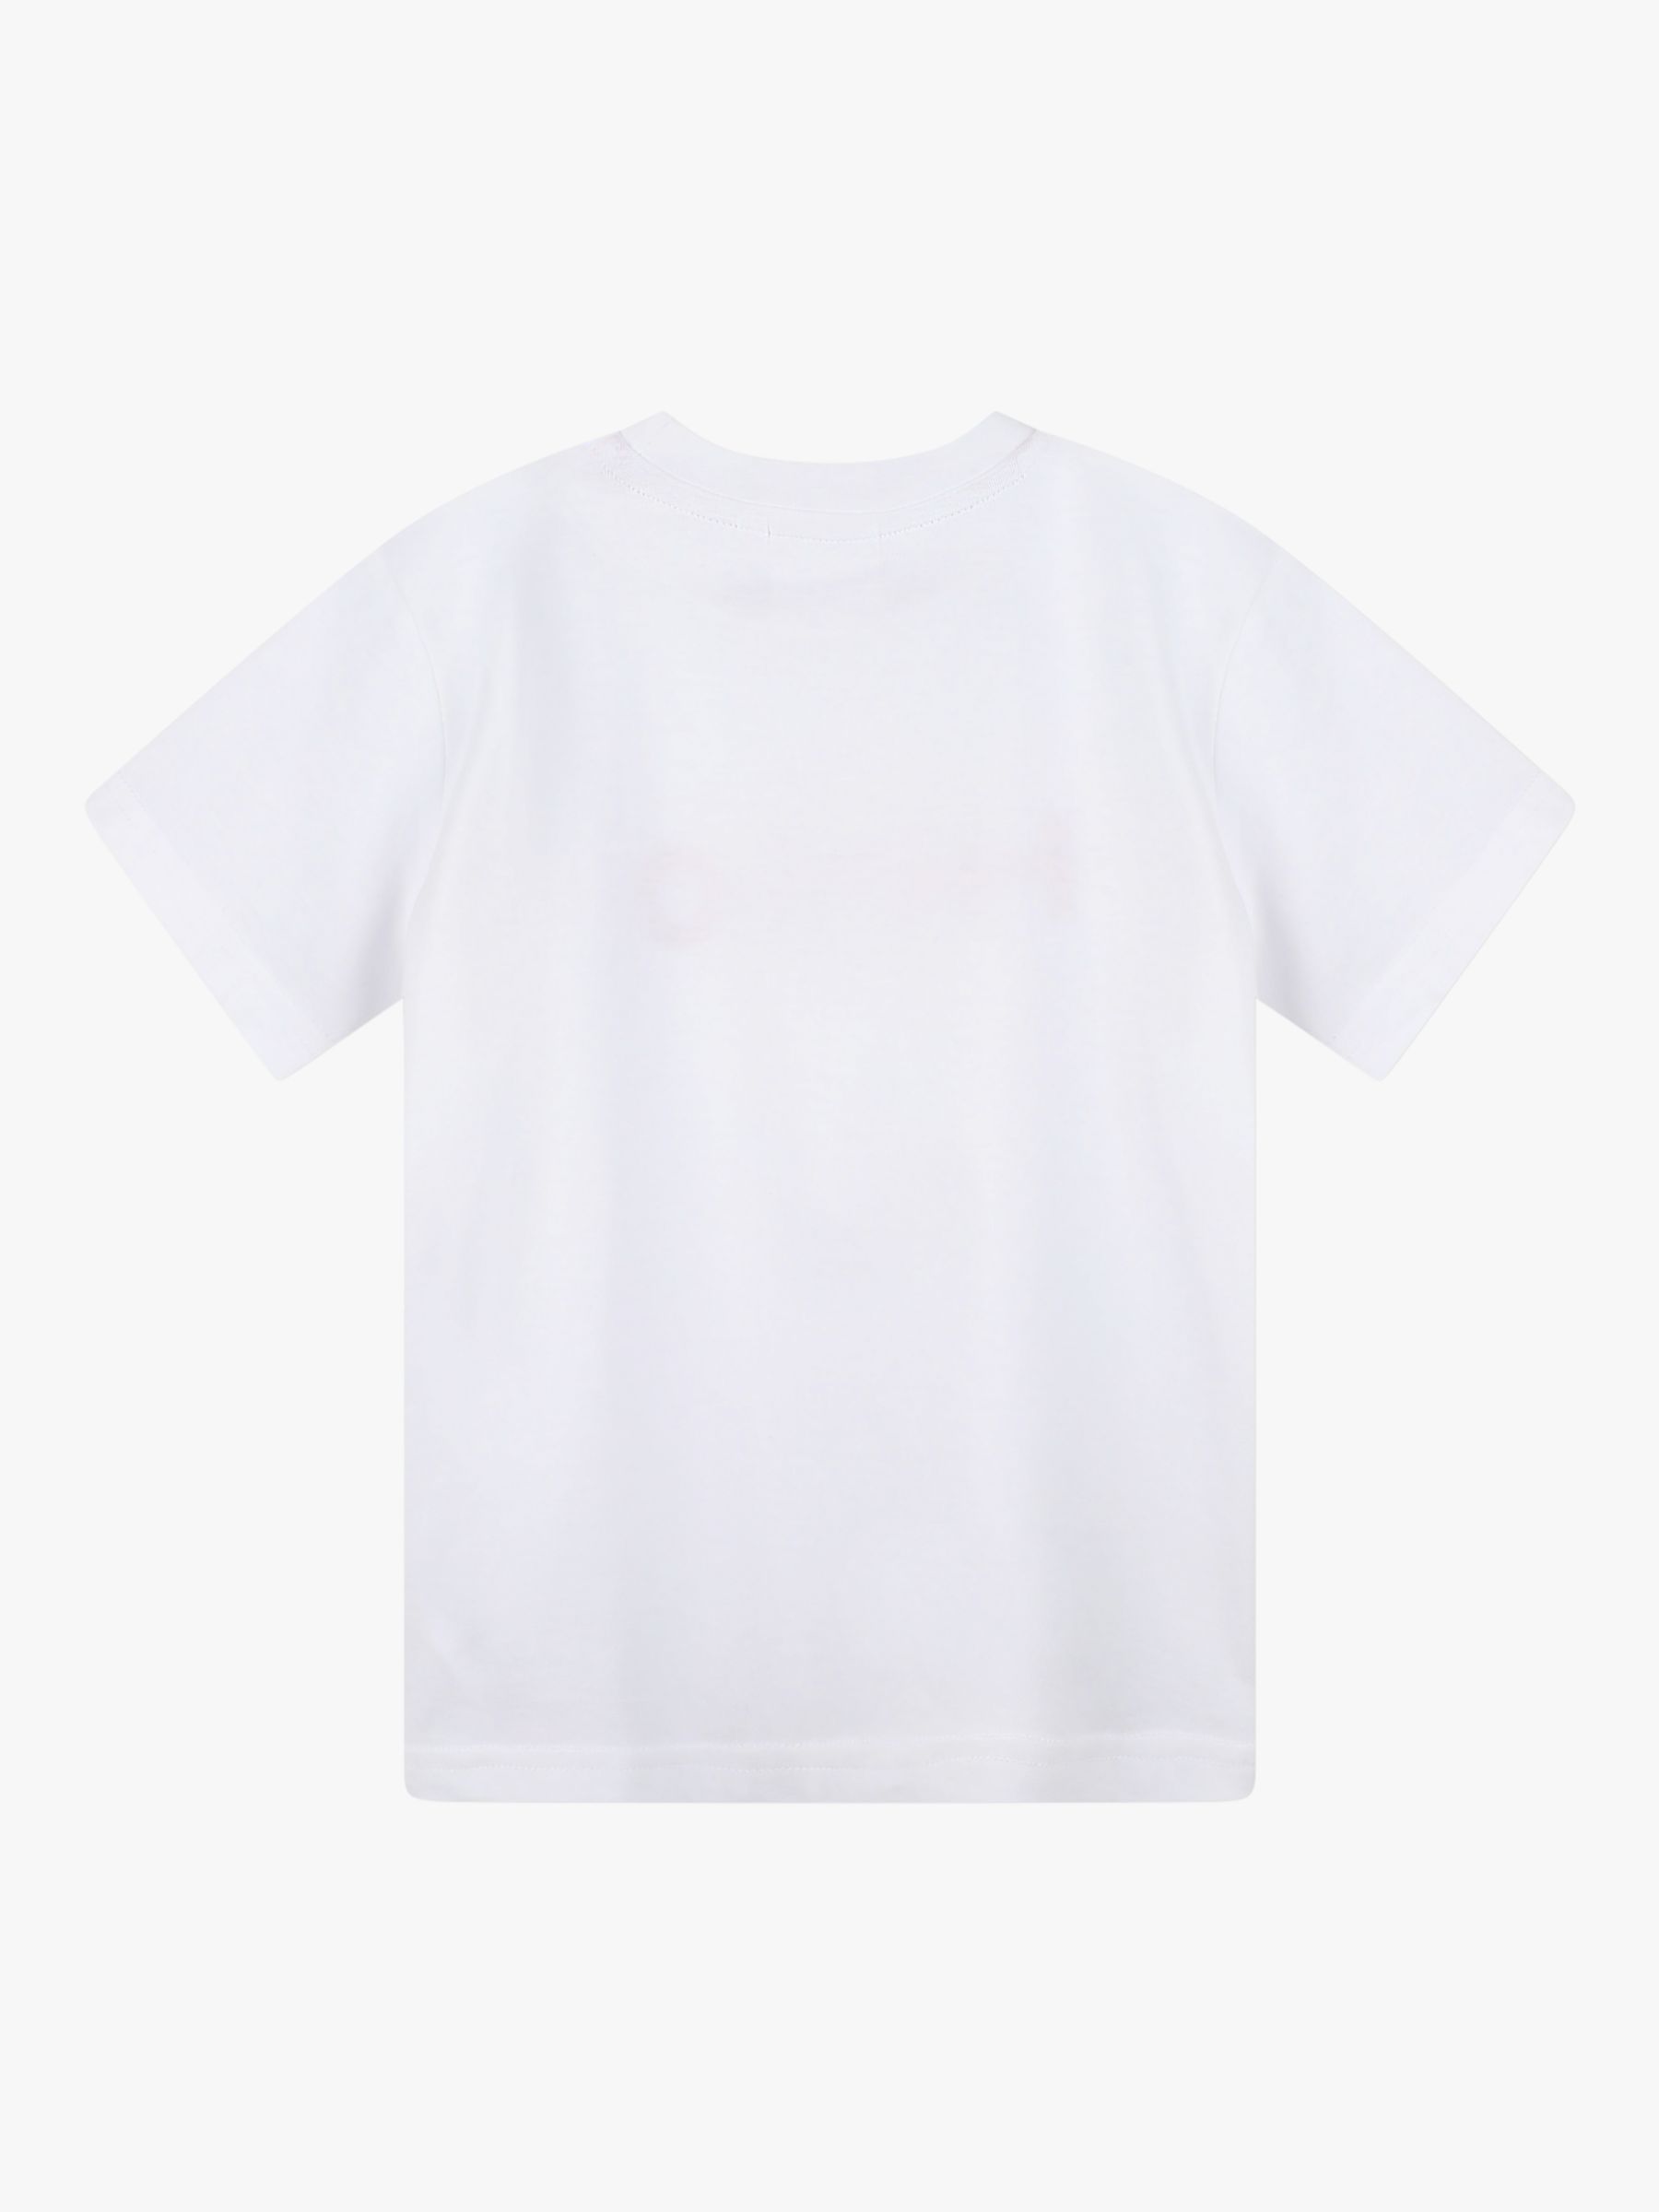 HUGO Kids' Large Logo Print T-Shirt, White/Red, 4 years